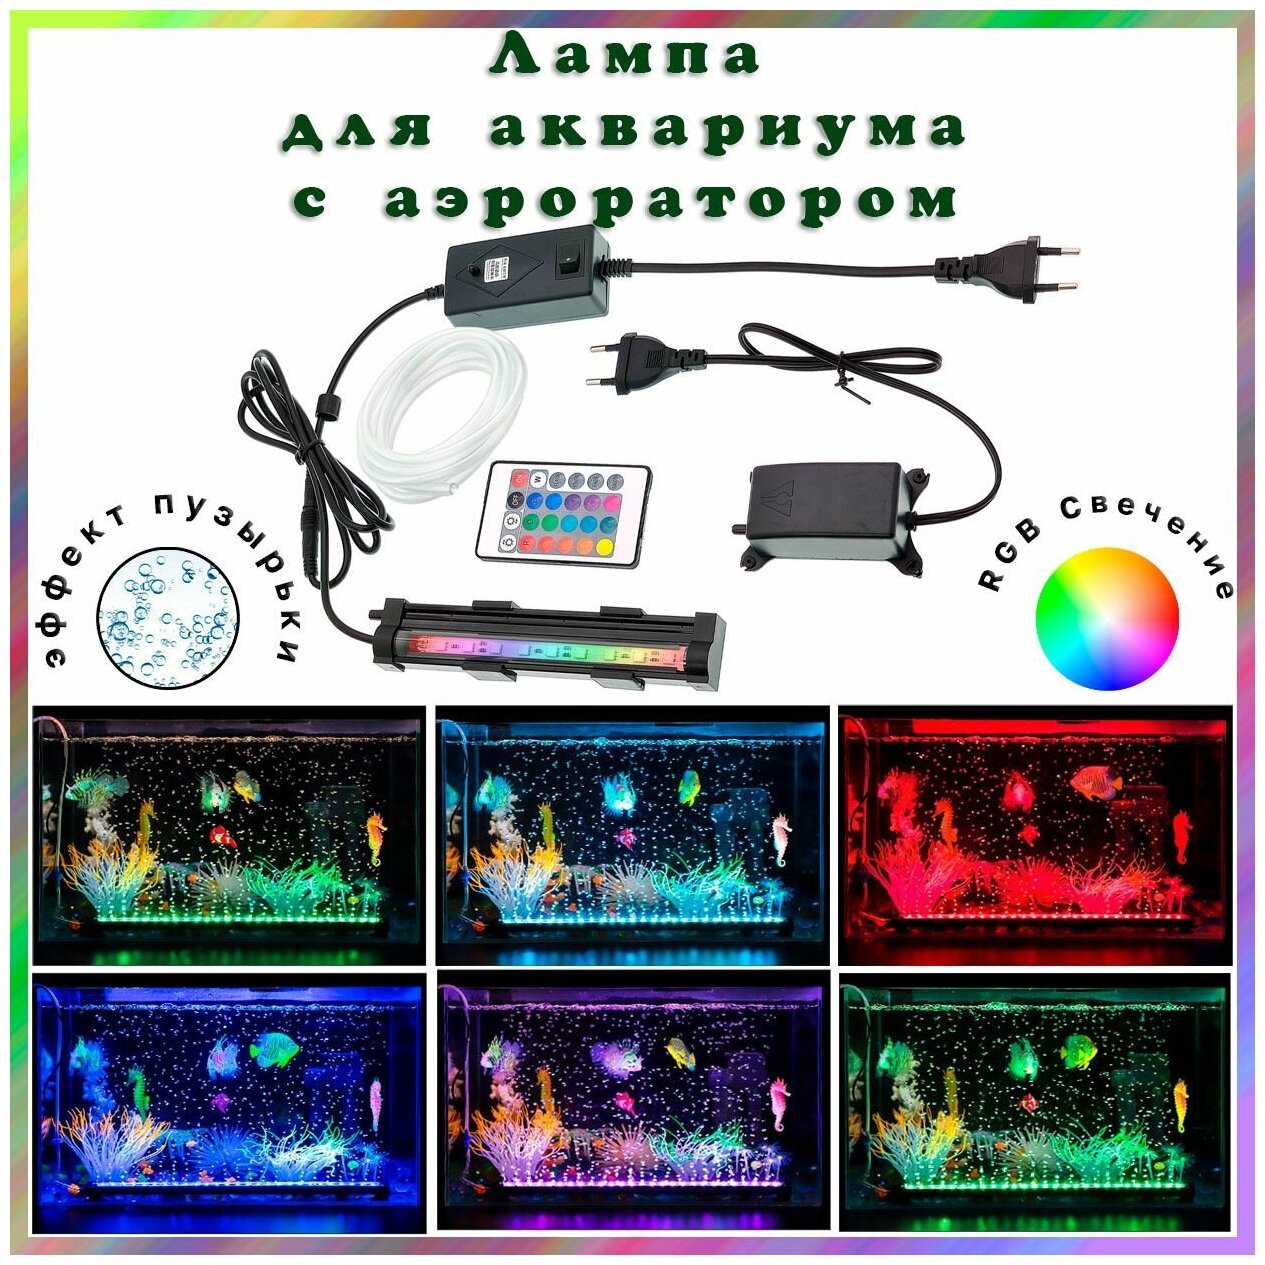 Лампа RGB аквариумная погружная с кислородным воздушным насосом (аэратор для аквариума) пульт ДУ